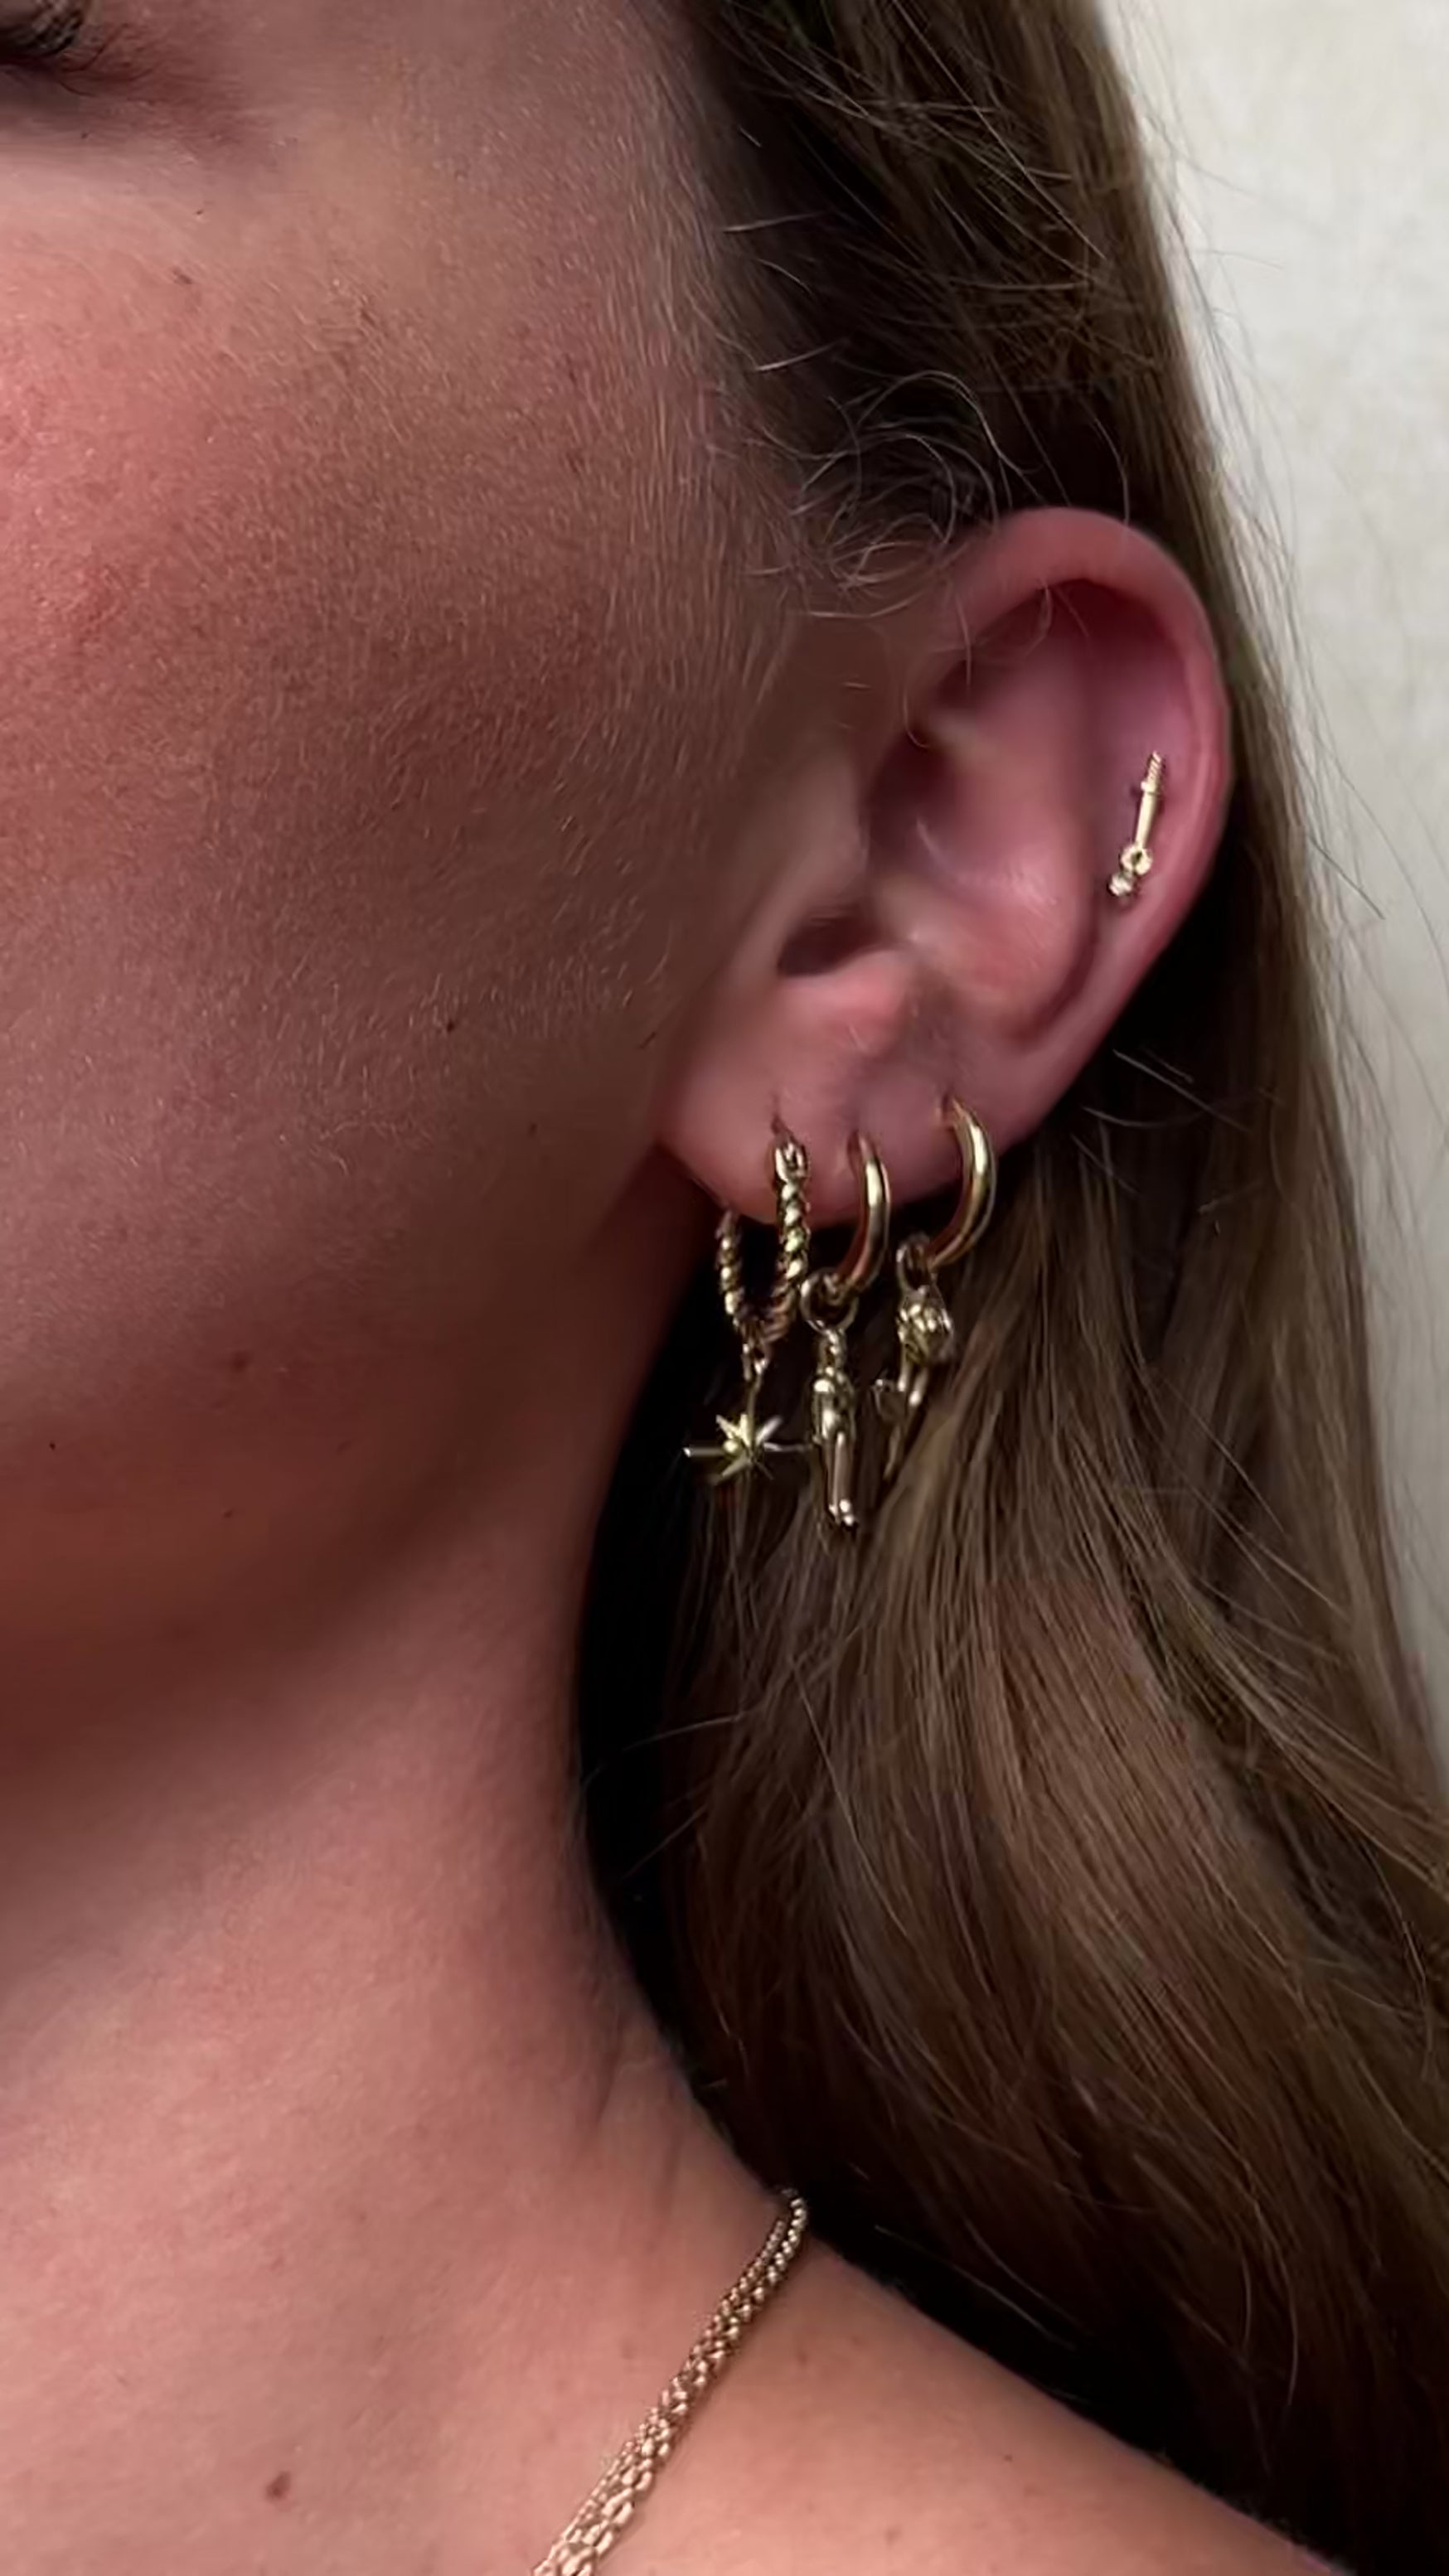 Penny earrings